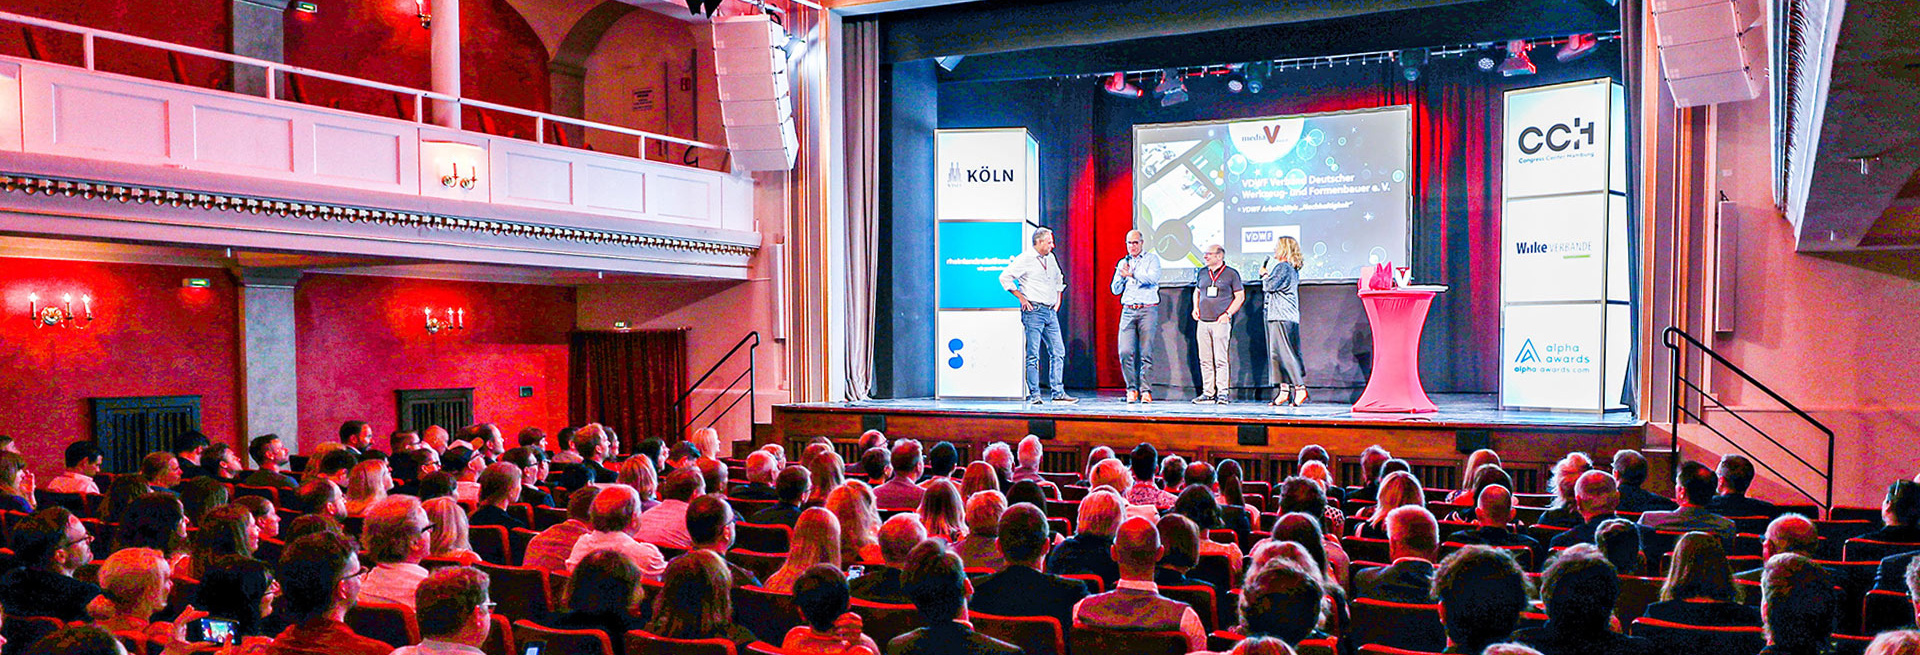 Dossier - Beste Nachhaltigkeitsinitiative in Köln ausgezeichnet: VDWF gewinnt Sonderpreis des mediaV-Awards